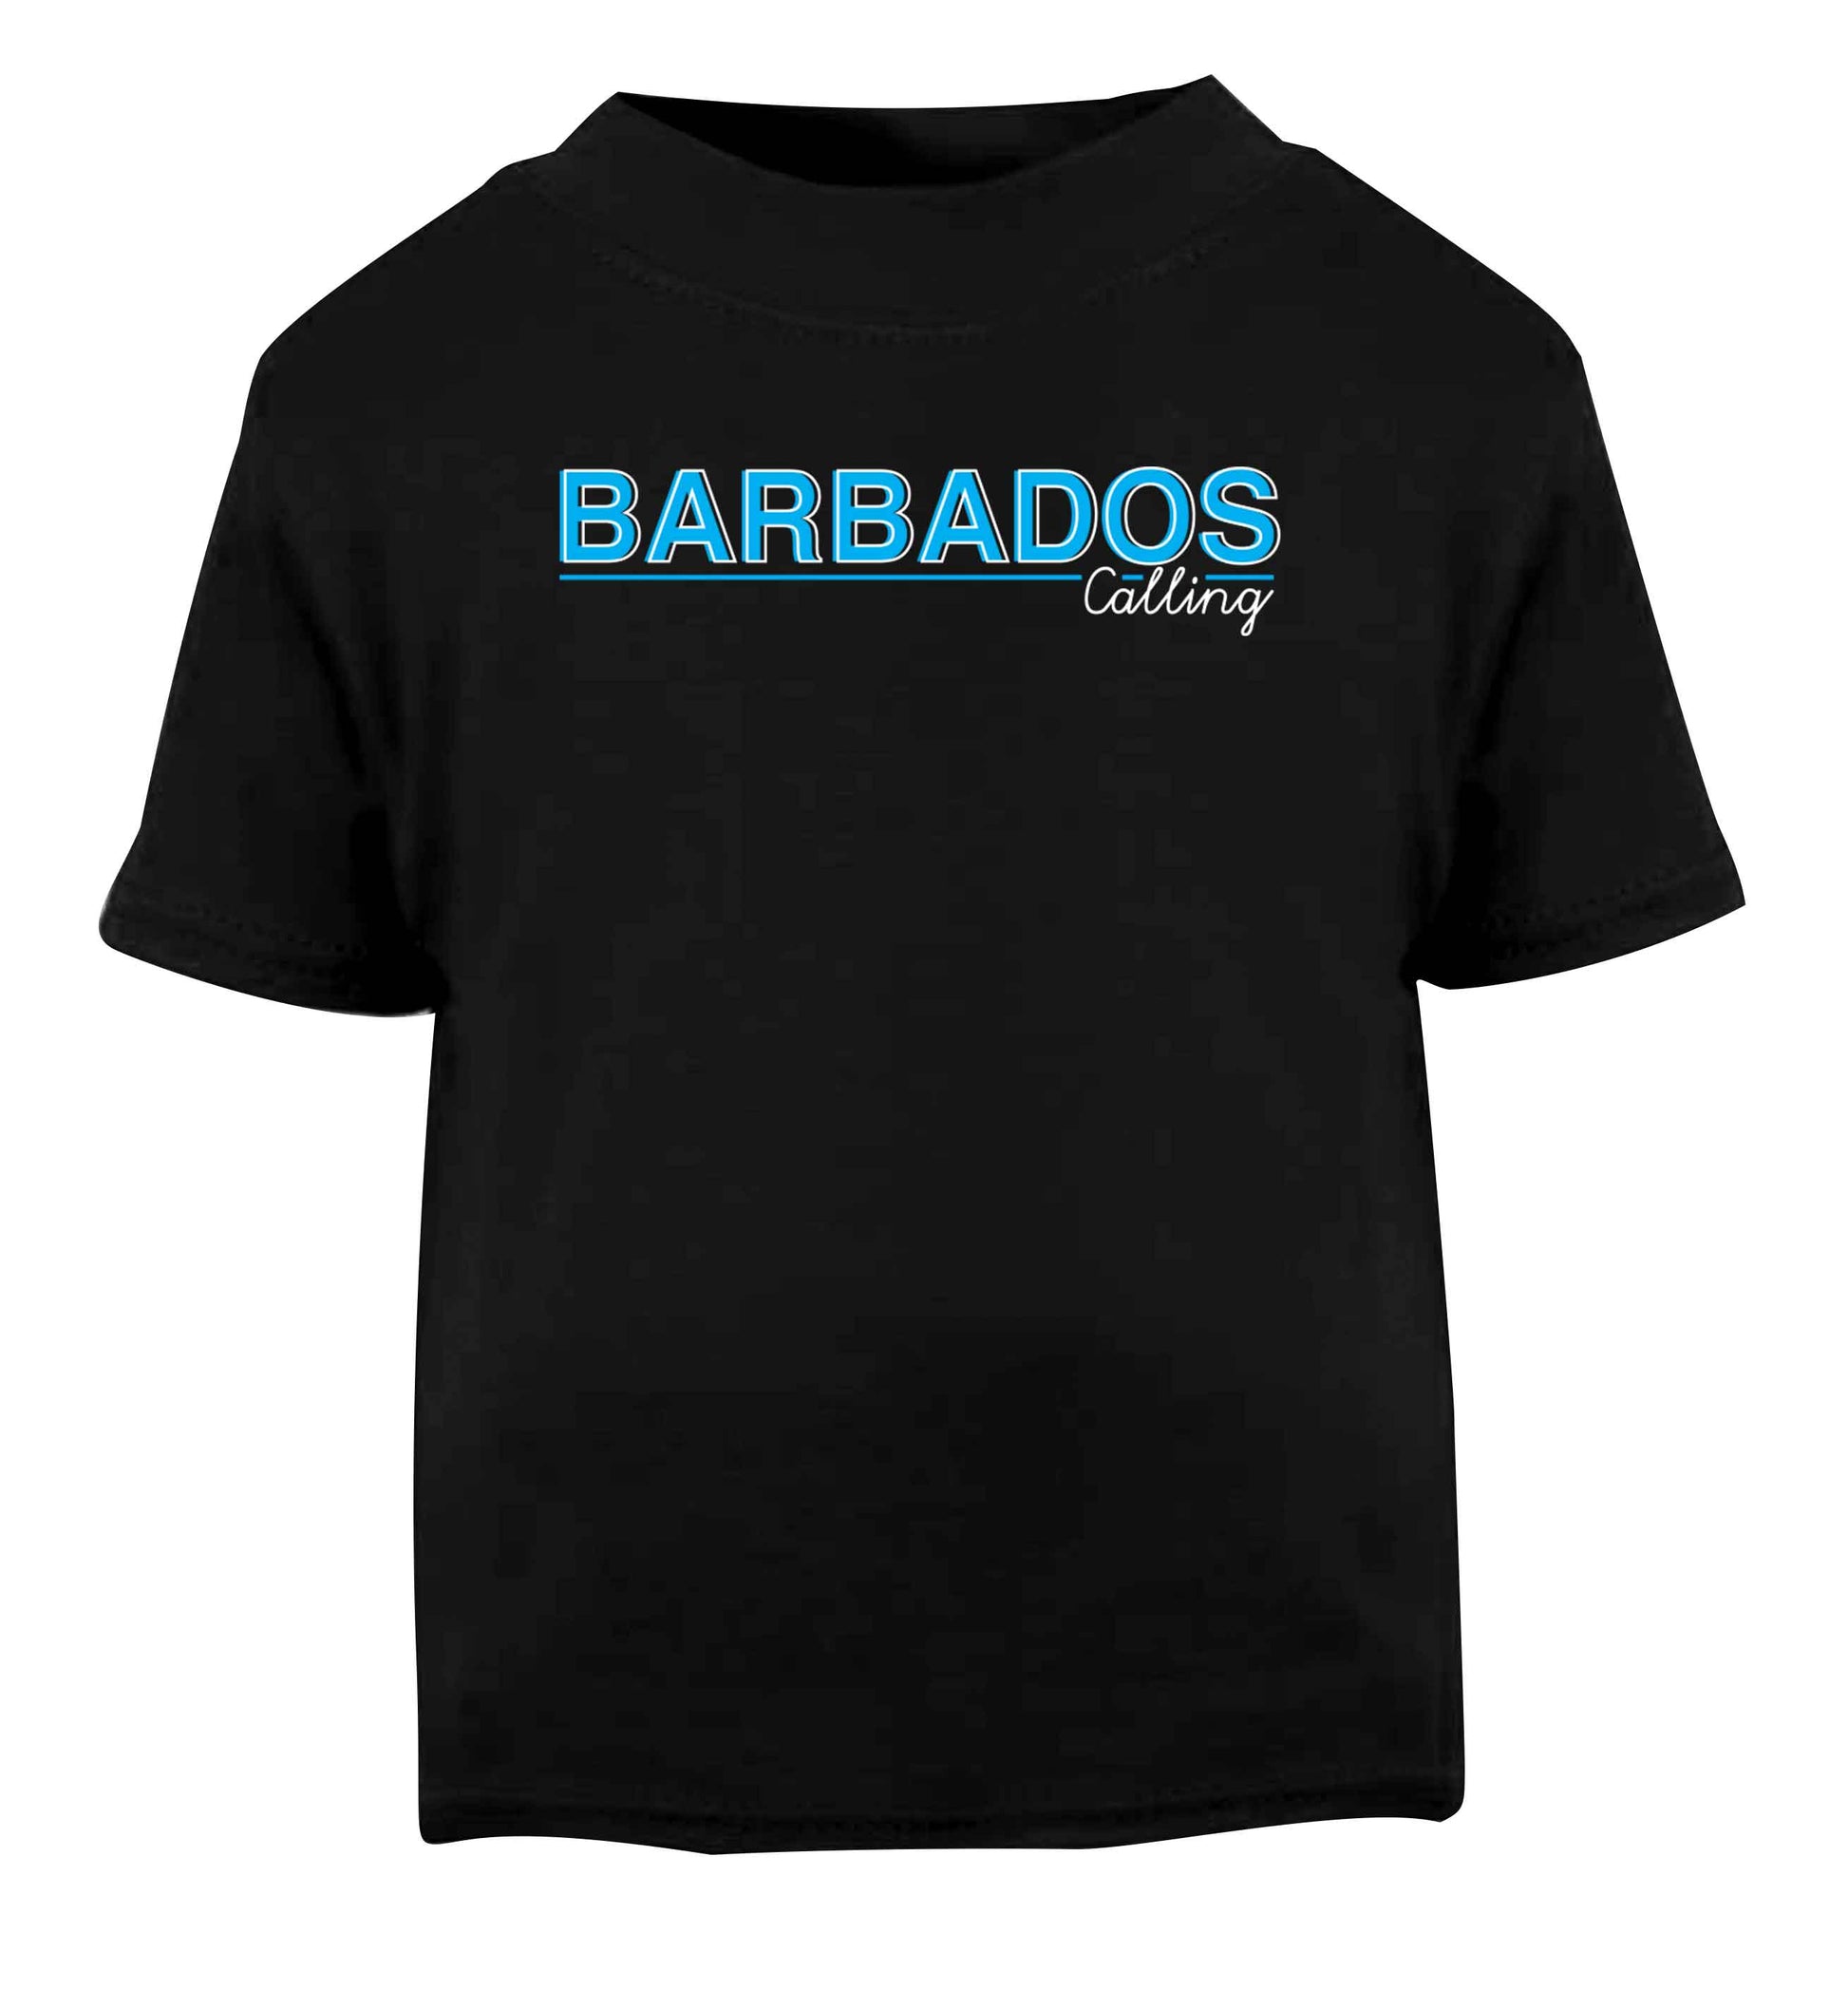 Barbados calling Black Baby Toddler Tshirt 2 years